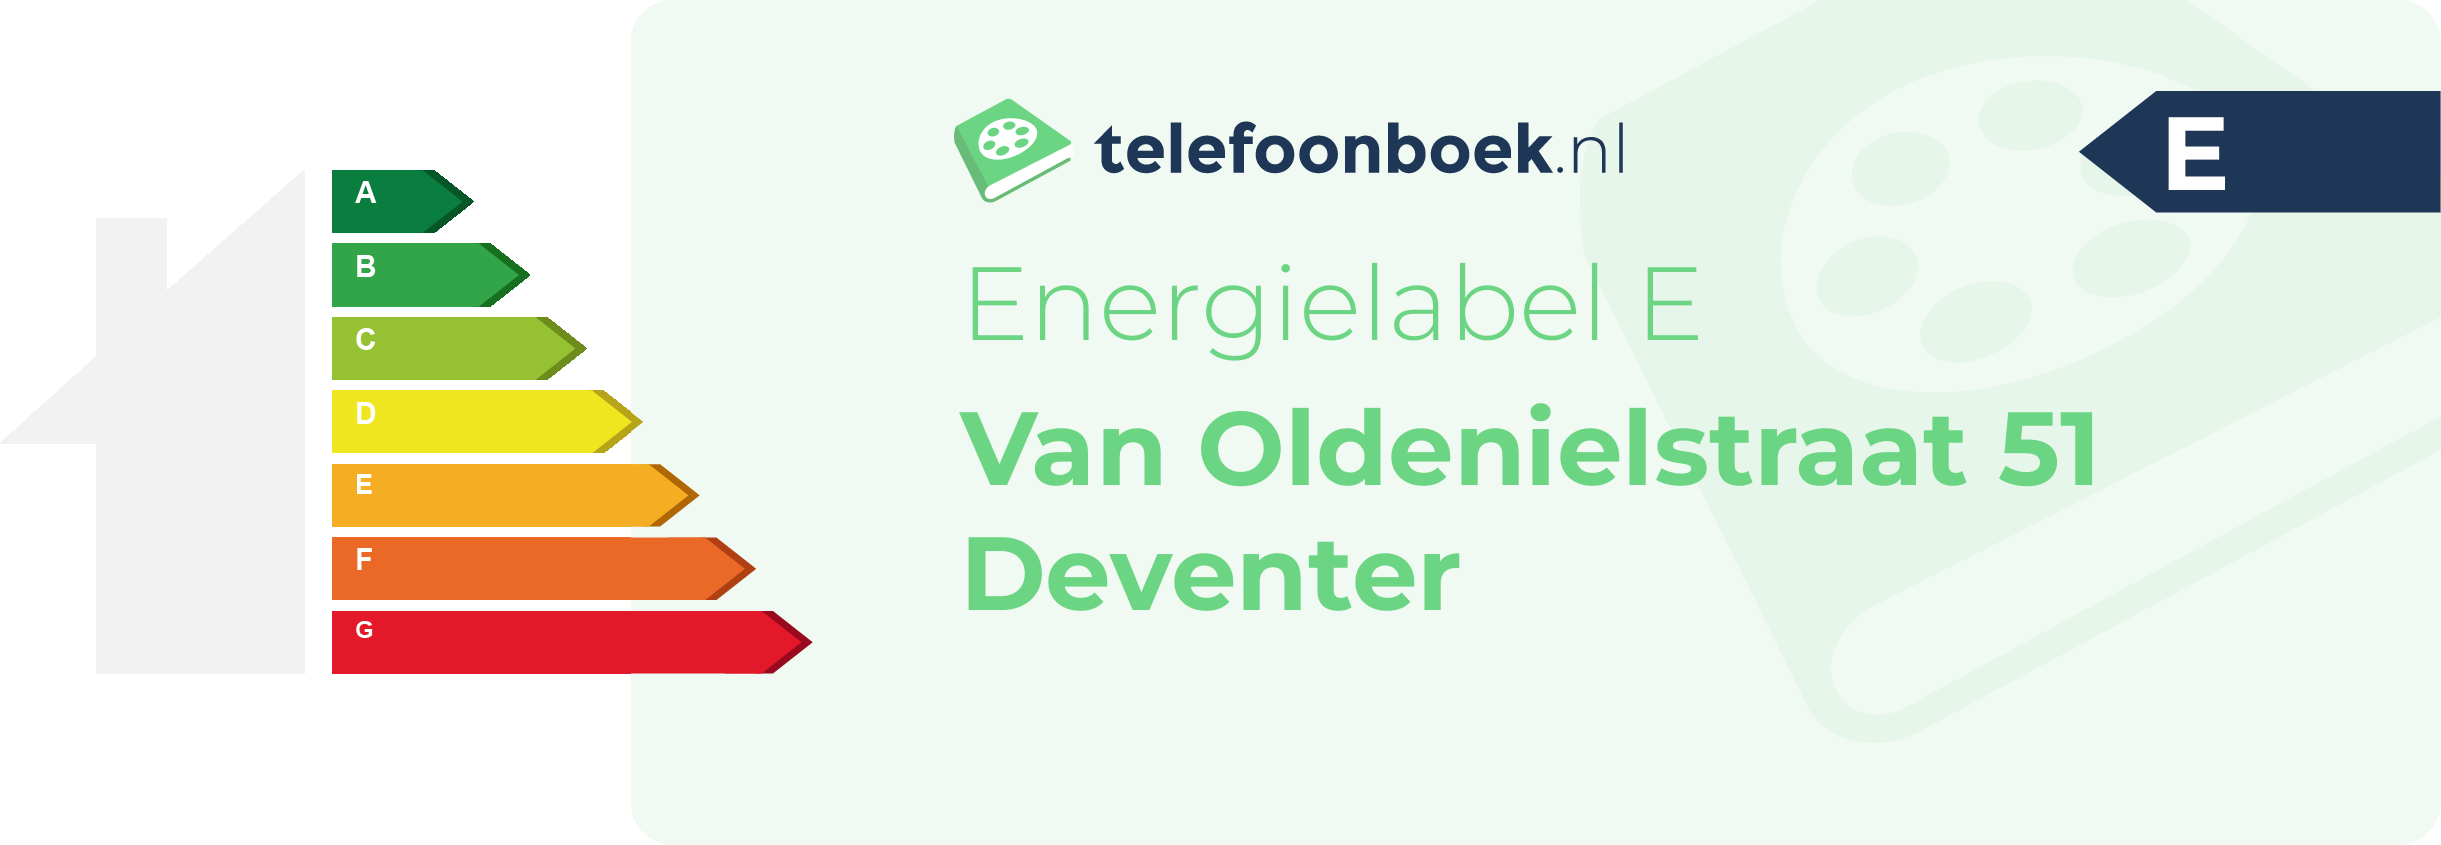 Energielabel Van Oldenielstraat 51 Deventer